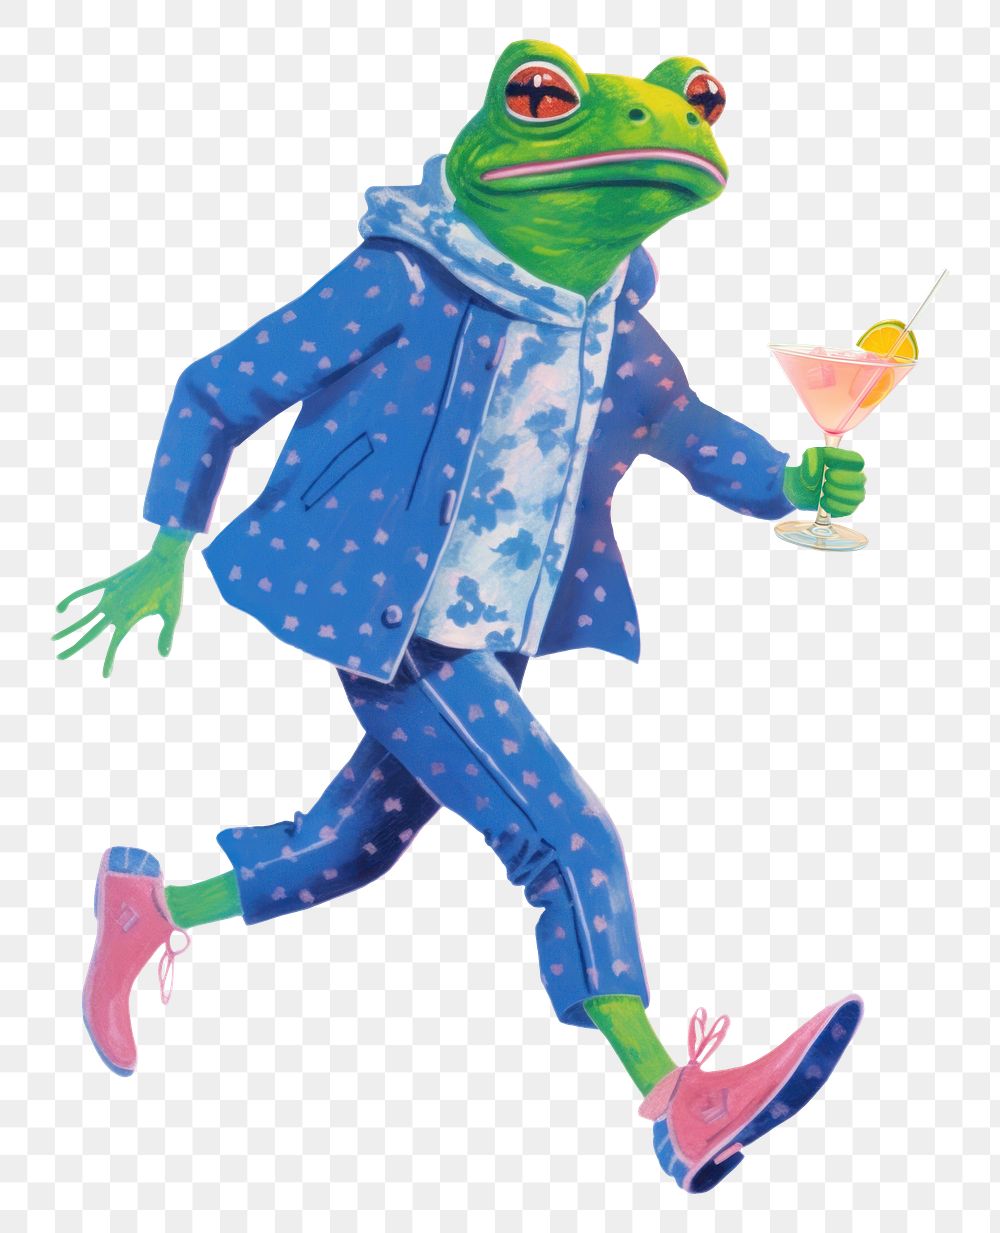 Frog character png holding cocktail glass digital art illustration, transparent background